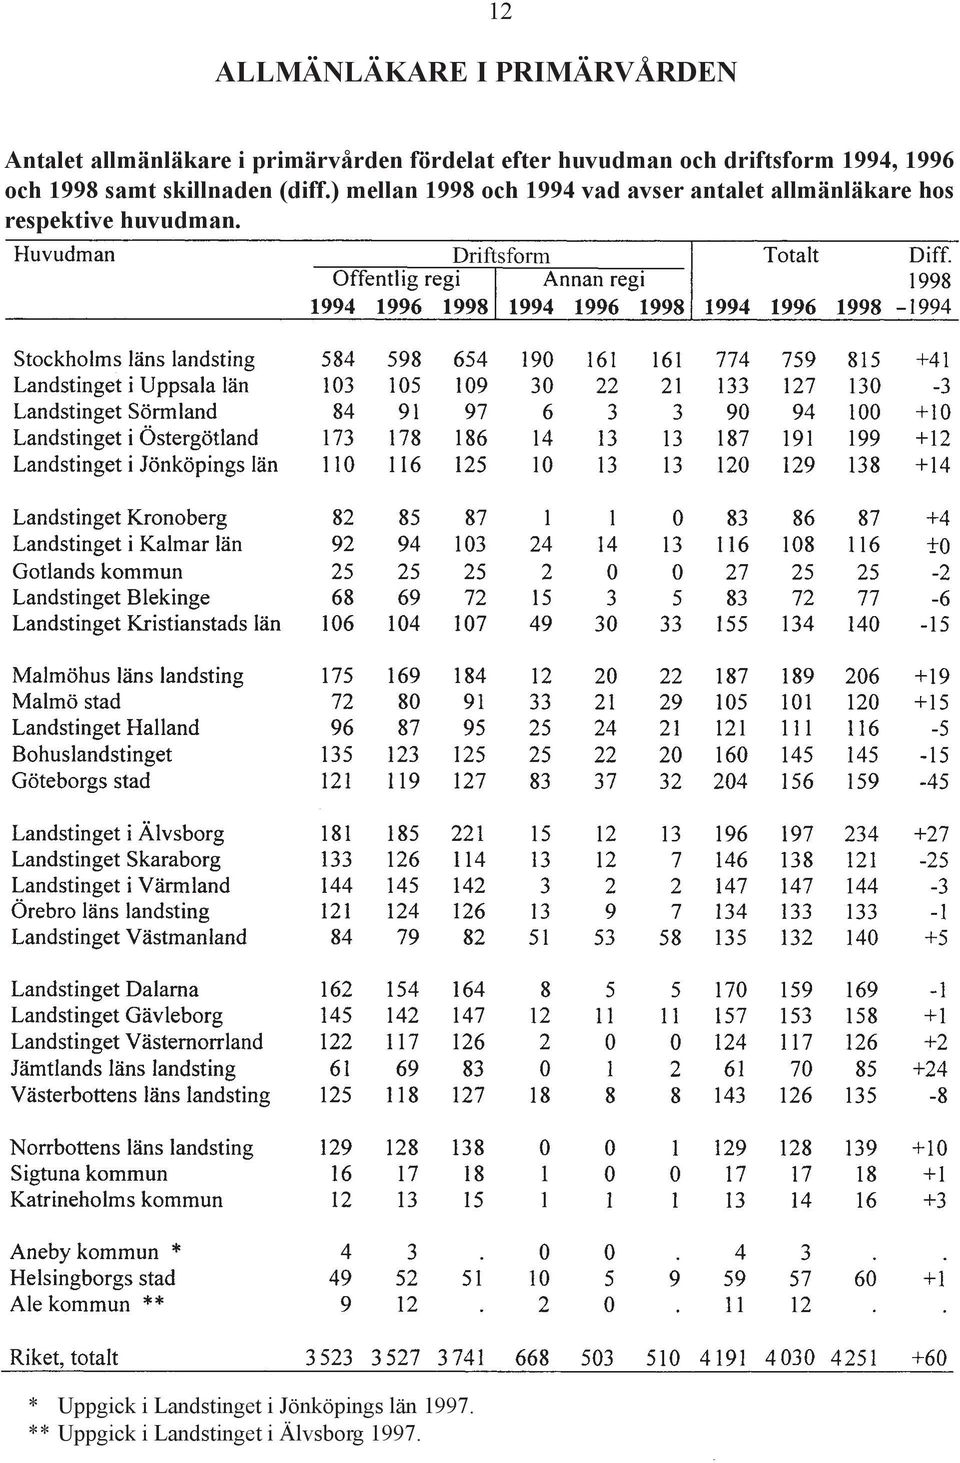 ) mellan 1998 och 1994 vad avser antalet allmänläkare hos respektive huvudman.